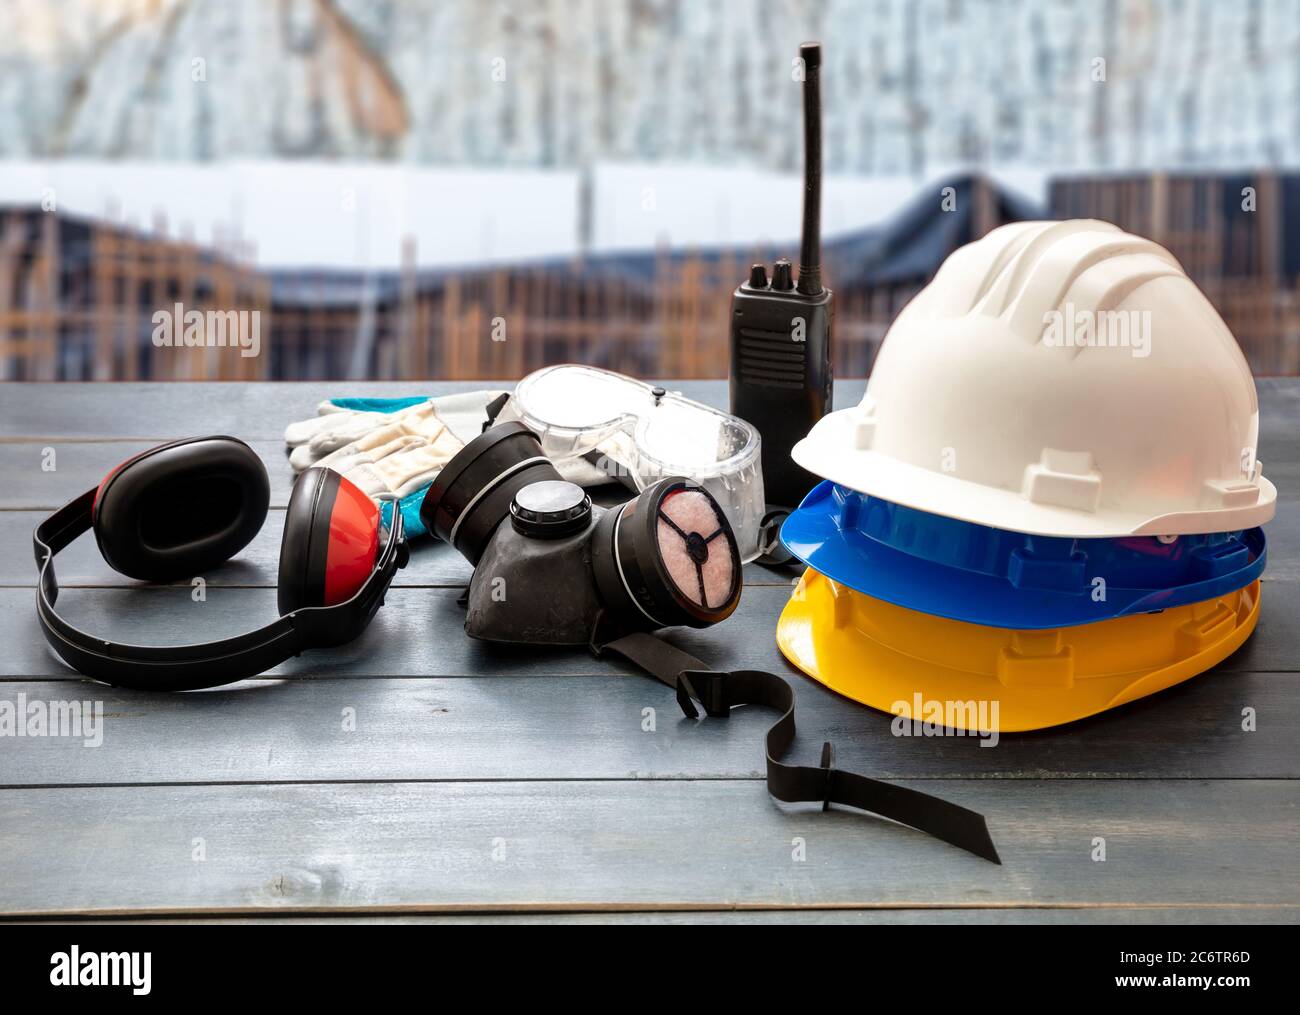 Arbeitsschutzausrüstung. Industrielle Schutzausrüstung auf Holztisch,  verwischen Baustelle Hintergrund. Hüte, Ohrenschützer, Atemschutzmaske  Stockfotografie - Alamy